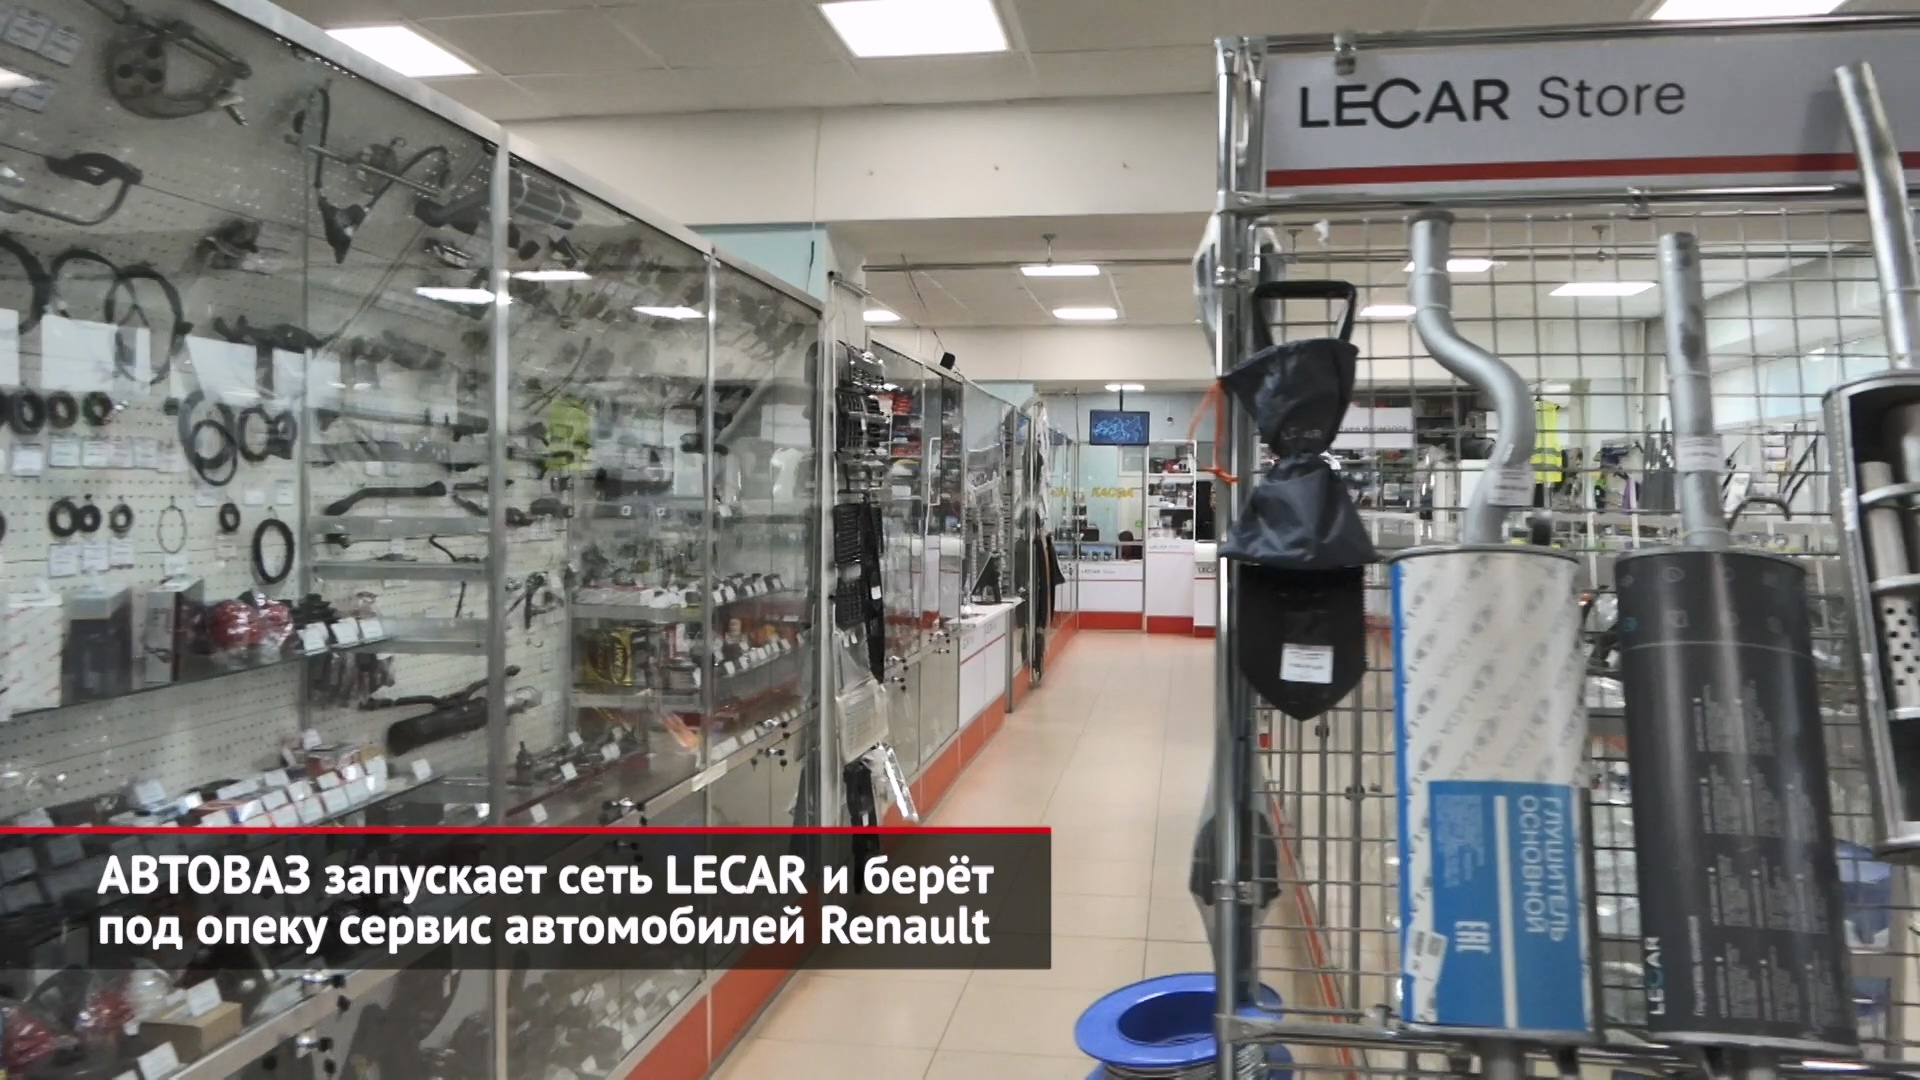 АВТОВАЗ запускает сеть LECAR и берёт под опеку сервис автомобилей Renault | Новости с колёс №2195